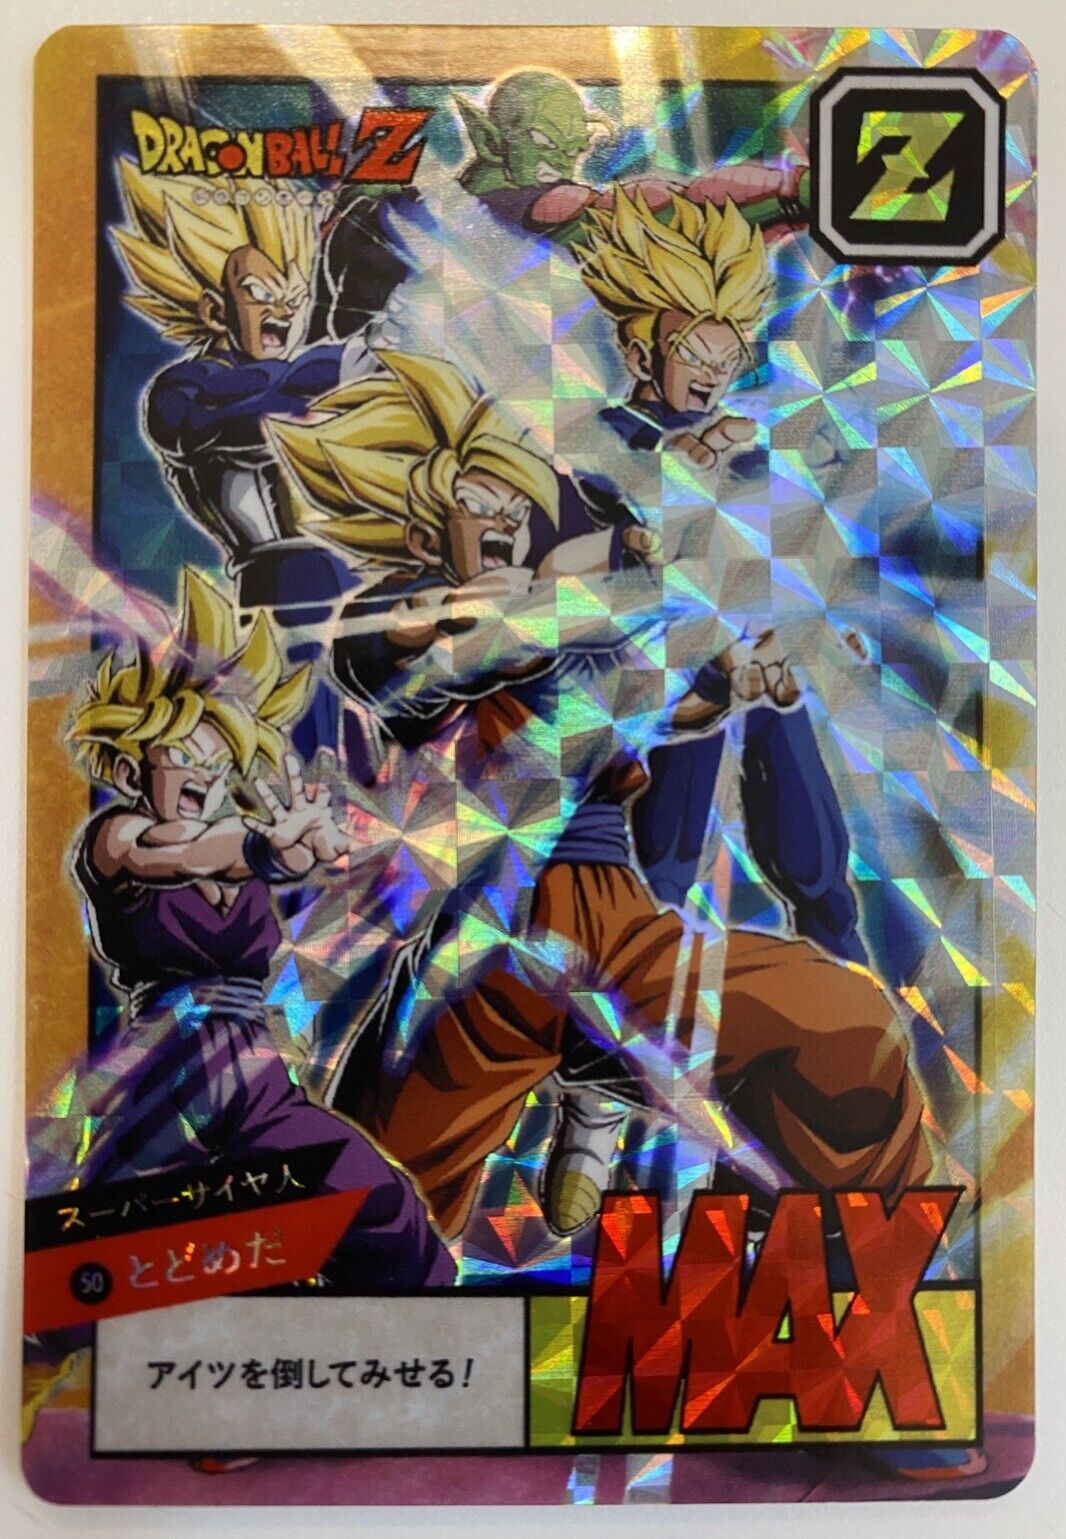 Soft Dragon Ball Z Power Level So Goku & Vegeta Prism Card No. 50